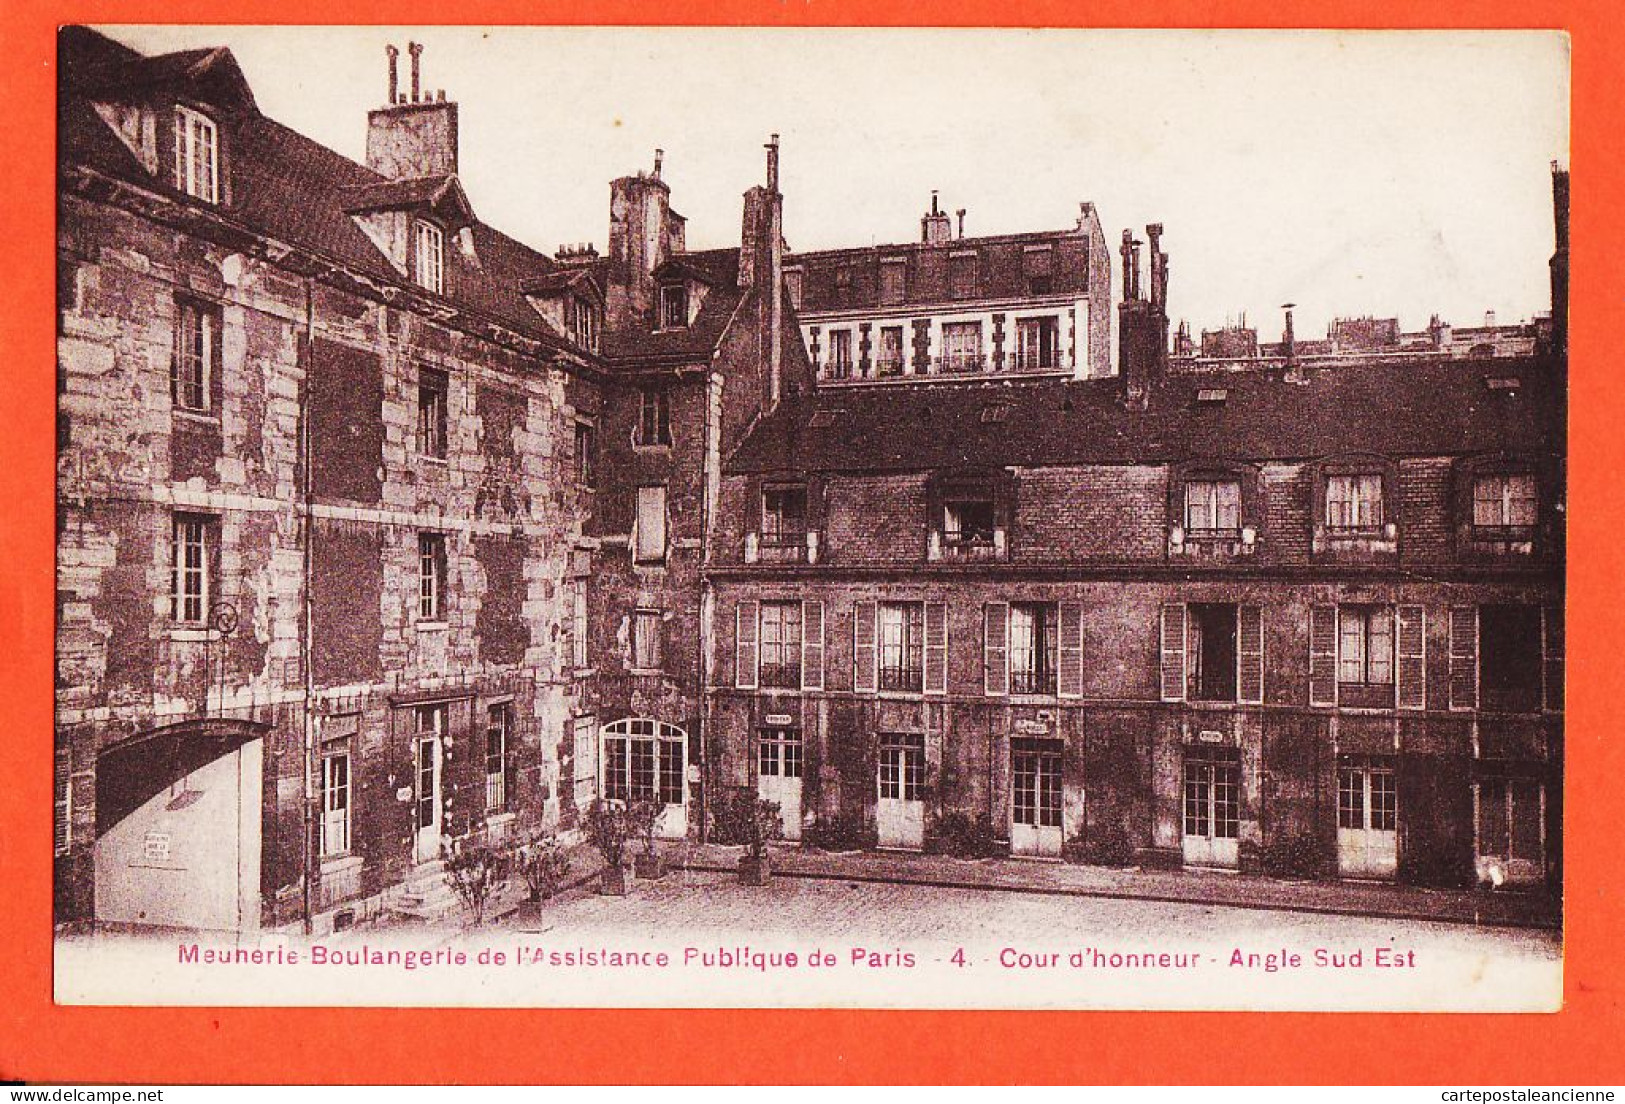 16382 / PARIS Meunerie Boulangerie Assistance Publique Cour Honneur Angle Sud-Est 1910s Simi-Bromure BREGER 4 - Gesundheit, Krankenhäuser